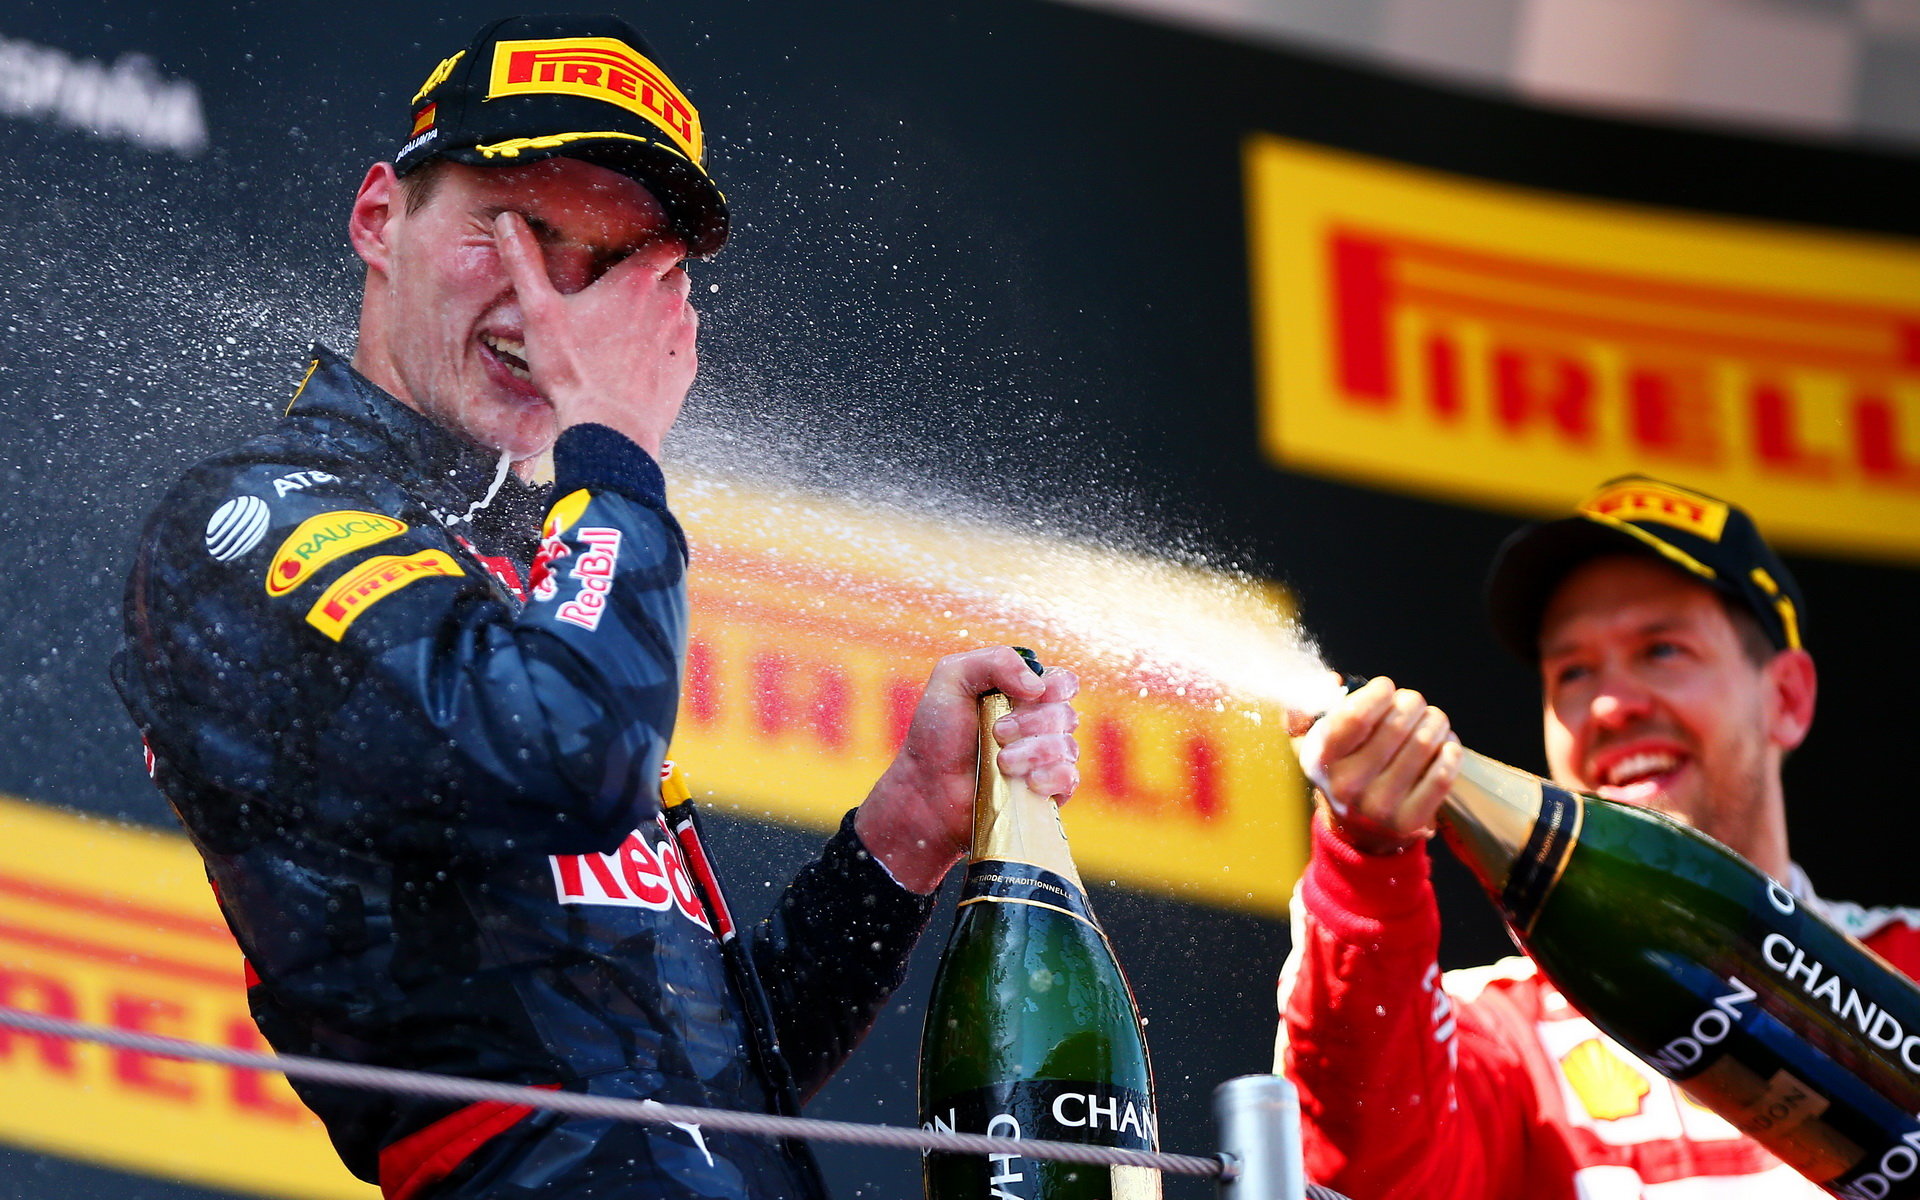 Max Verstappen, nejmladší vítěz Formule 1 slaví na pódiu v Barceloně